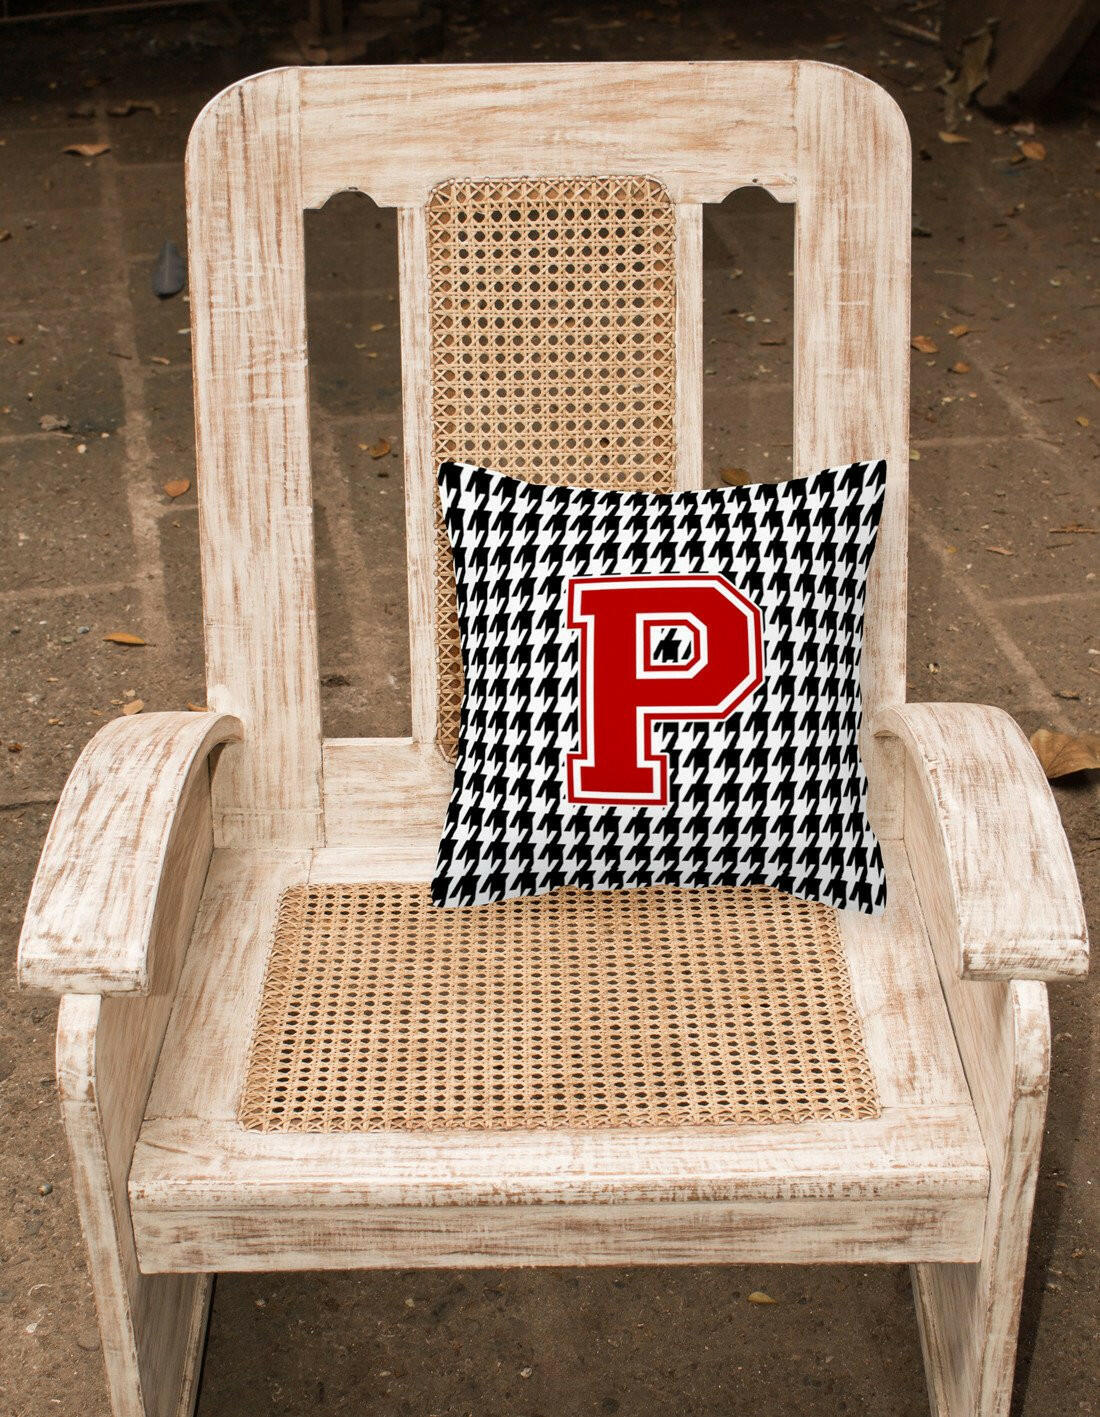 Monogram - Initial P Houndstooth Decorative   Canvas Fabric Pillow CJ1021 - the-store.com